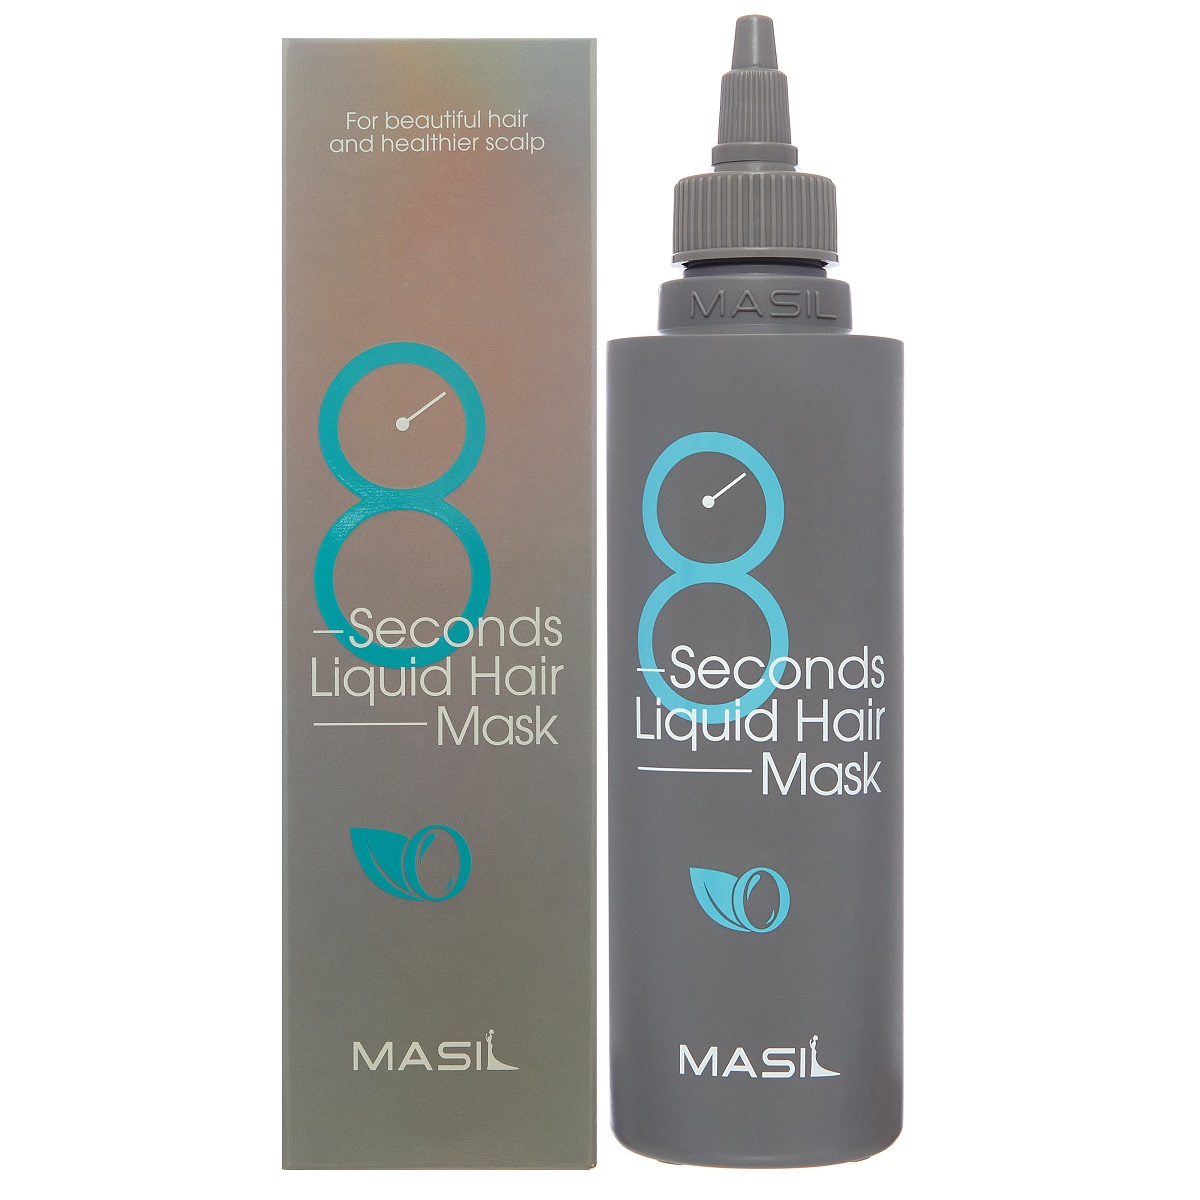 цена Masil Экспресс-маска для увеличения объёма волос 8 Seconds Liquid Hair Mask, 200 мл (Masil, )